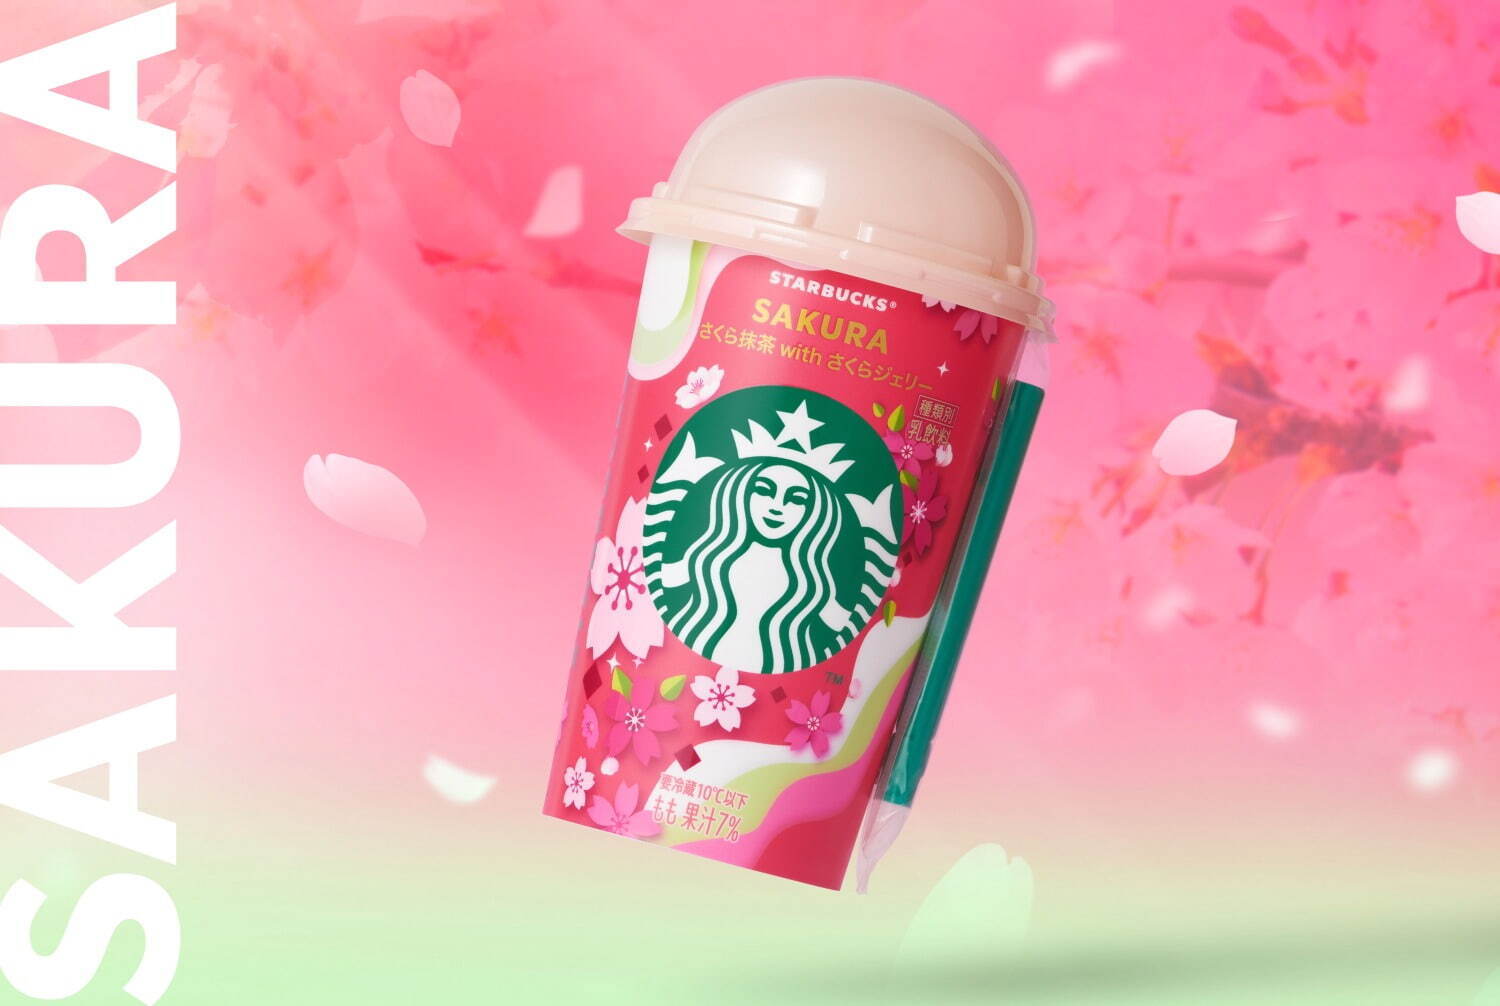 Starbucks Sakura Matcha with Sakura Jelly